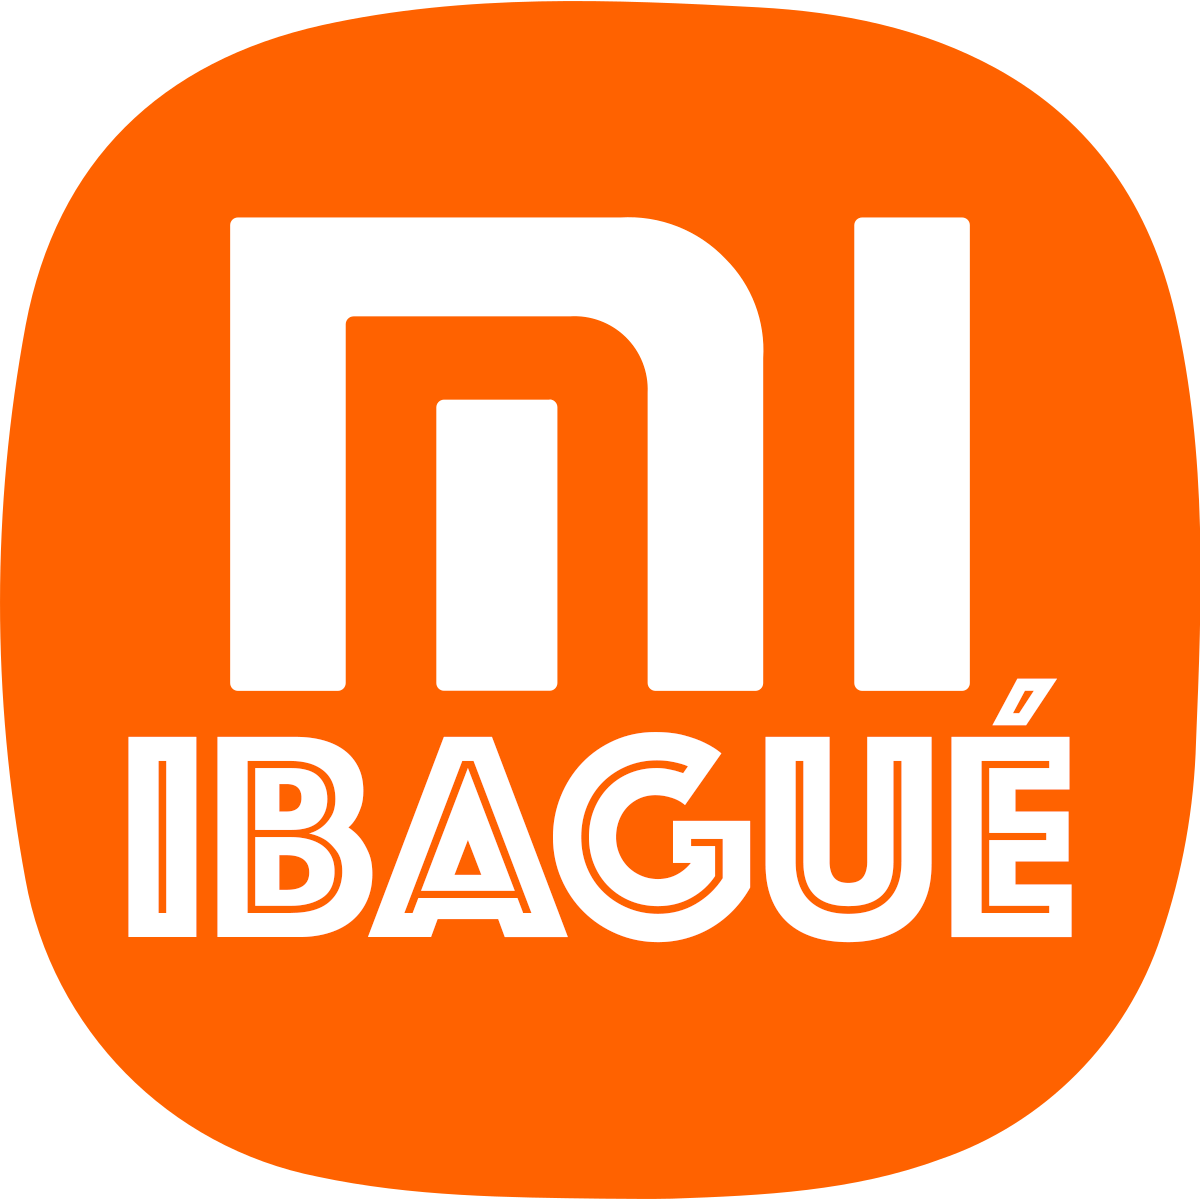 Xiaomi Ibague